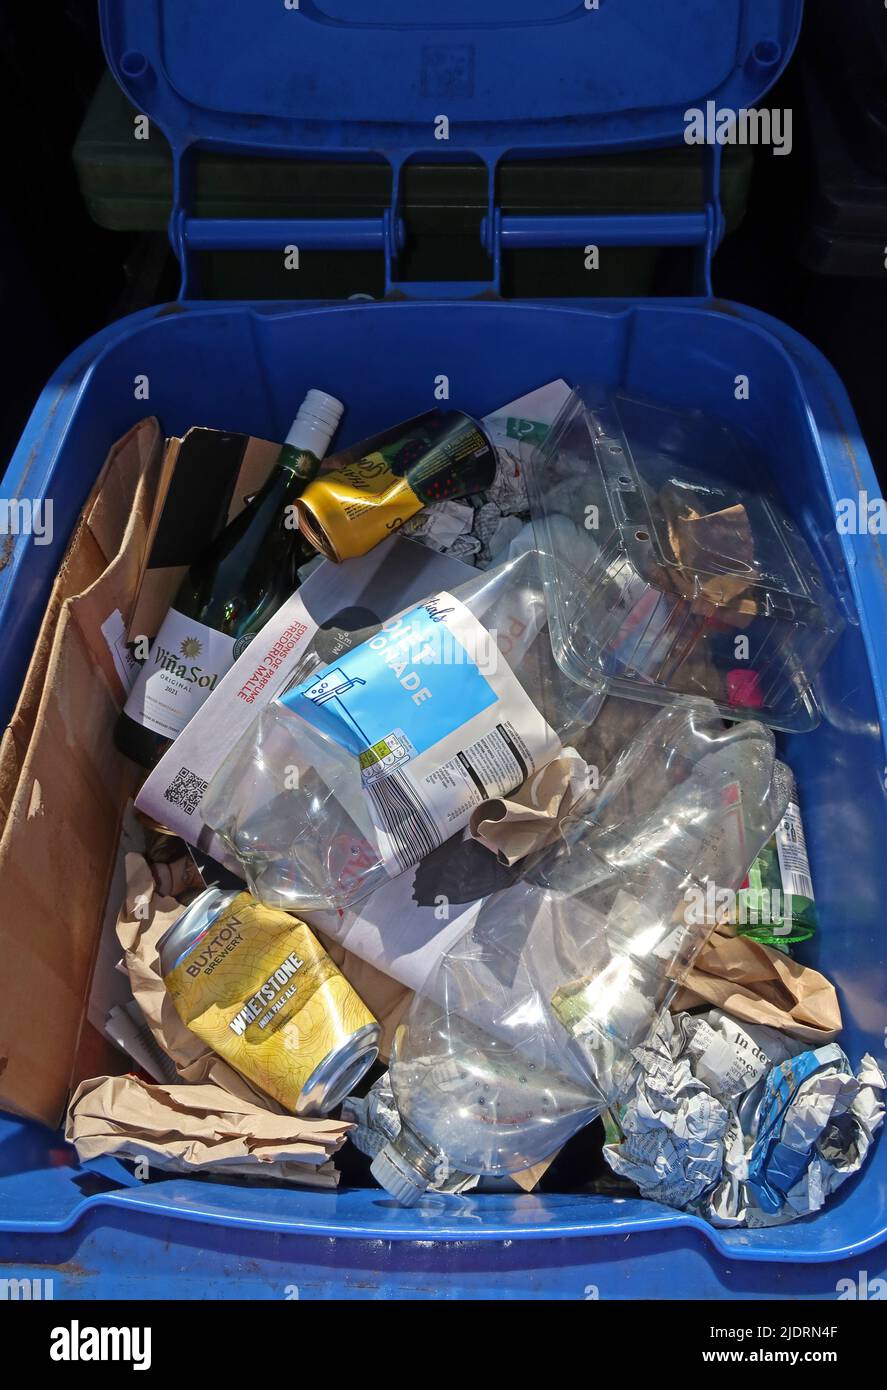 Recyclage mixte - poubelle bleue pour matériaux à recycler, Warrington Borough Council, Cheshire, Angleterre, Royaume-Uni, WA1 - plastique,verre,papier,boîtes,acier Banque D'Images